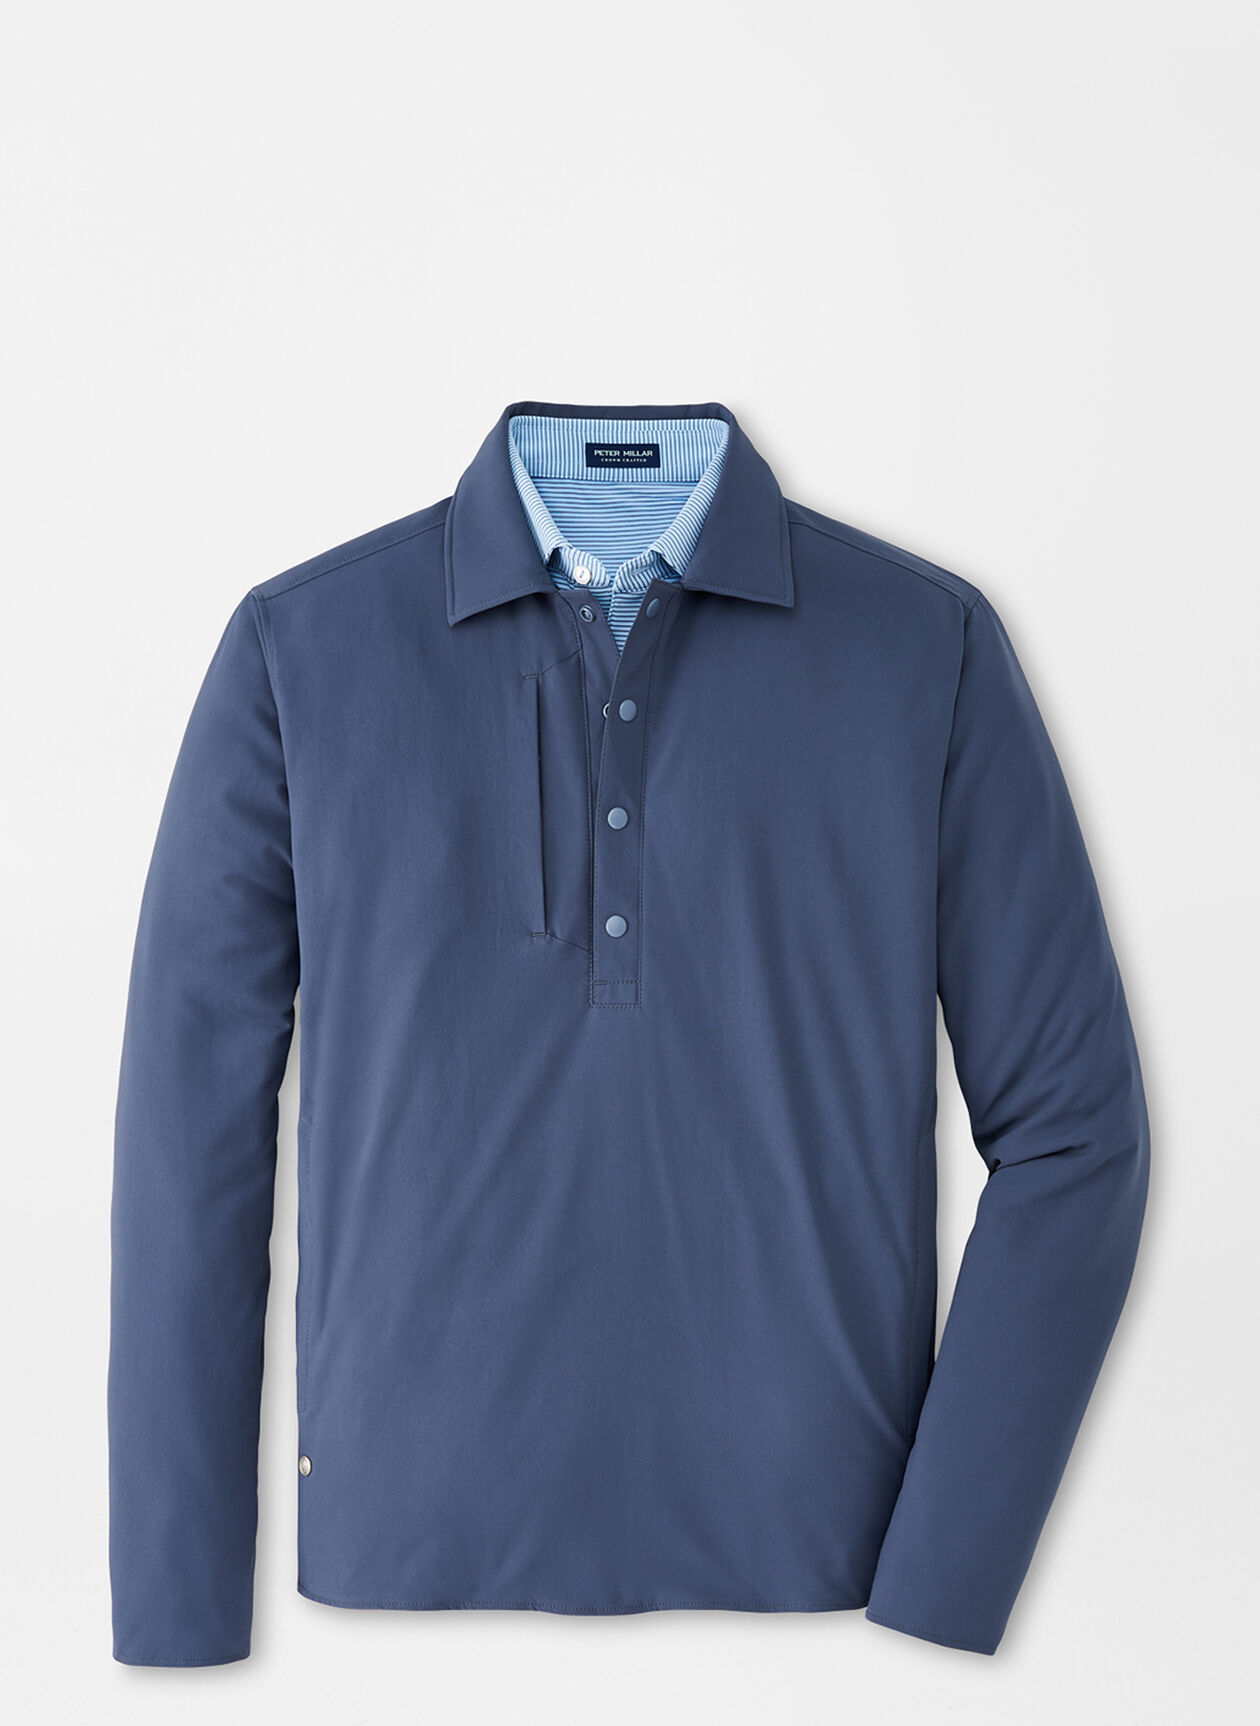 Approach Insulated Snap Shirt | Men's Jacket's & Coats | Peter Millar